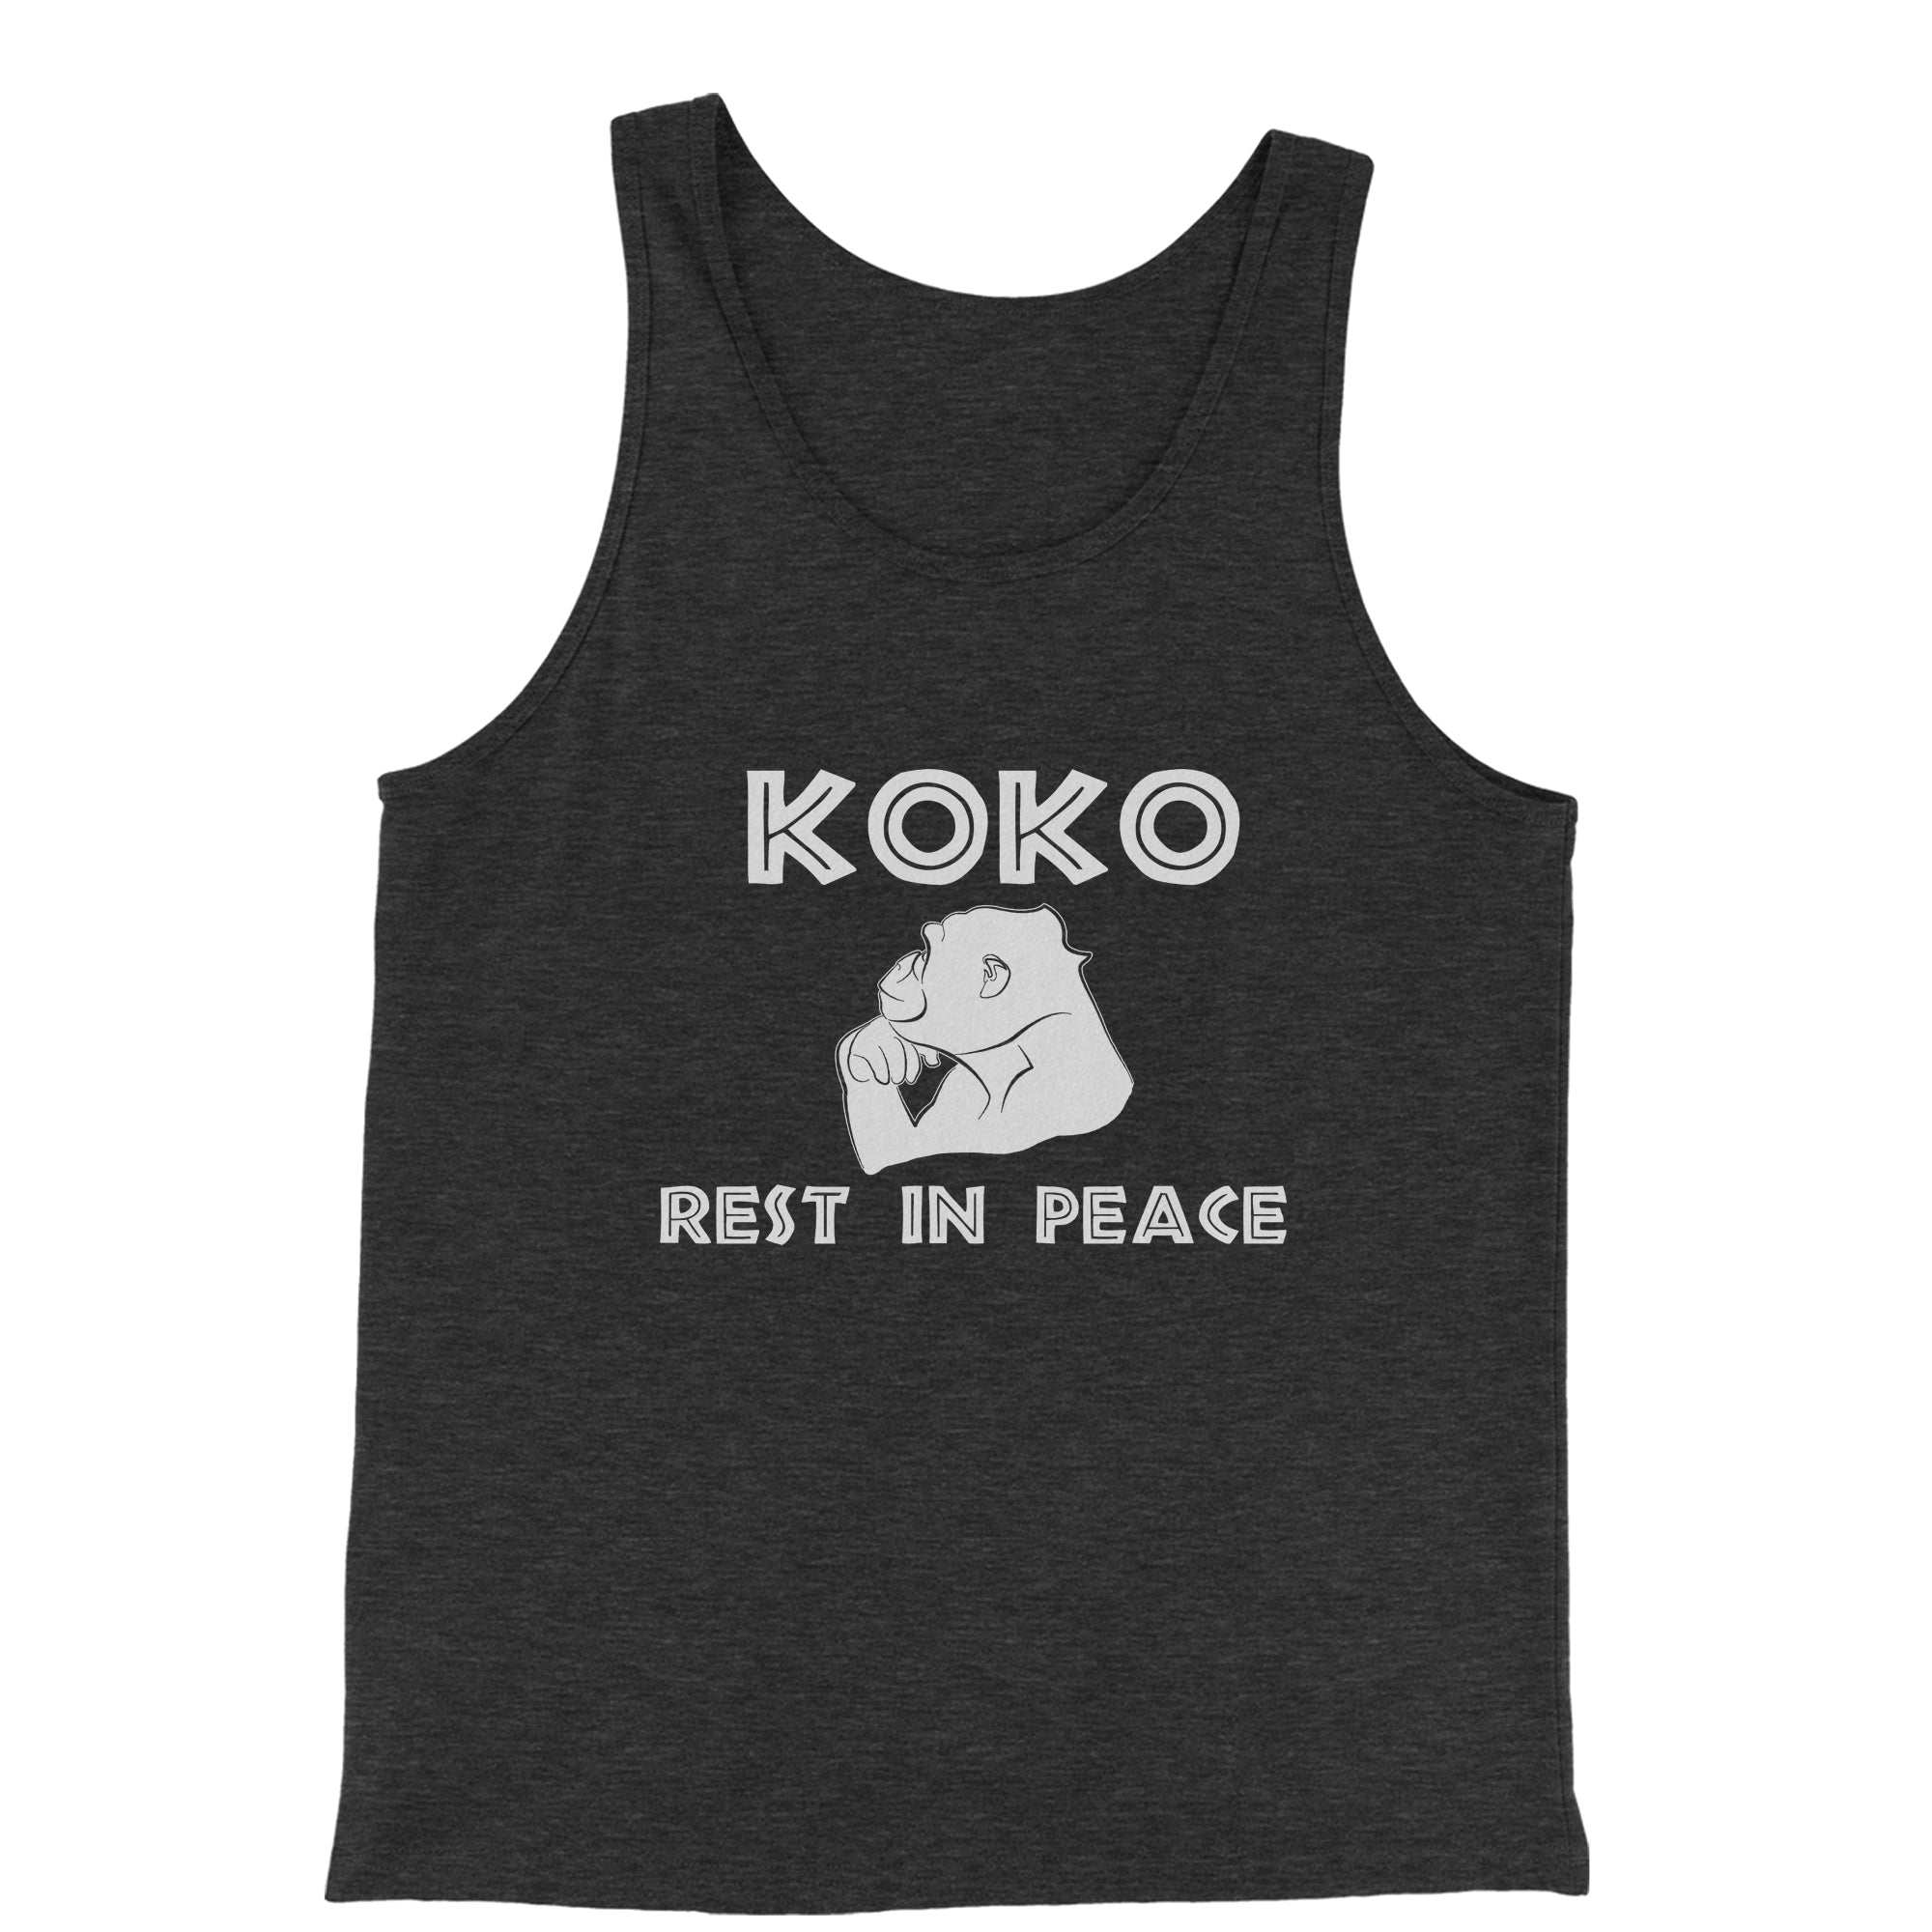 Koko the Talking Gorilla Rest in Peace Men's Jersey Tank